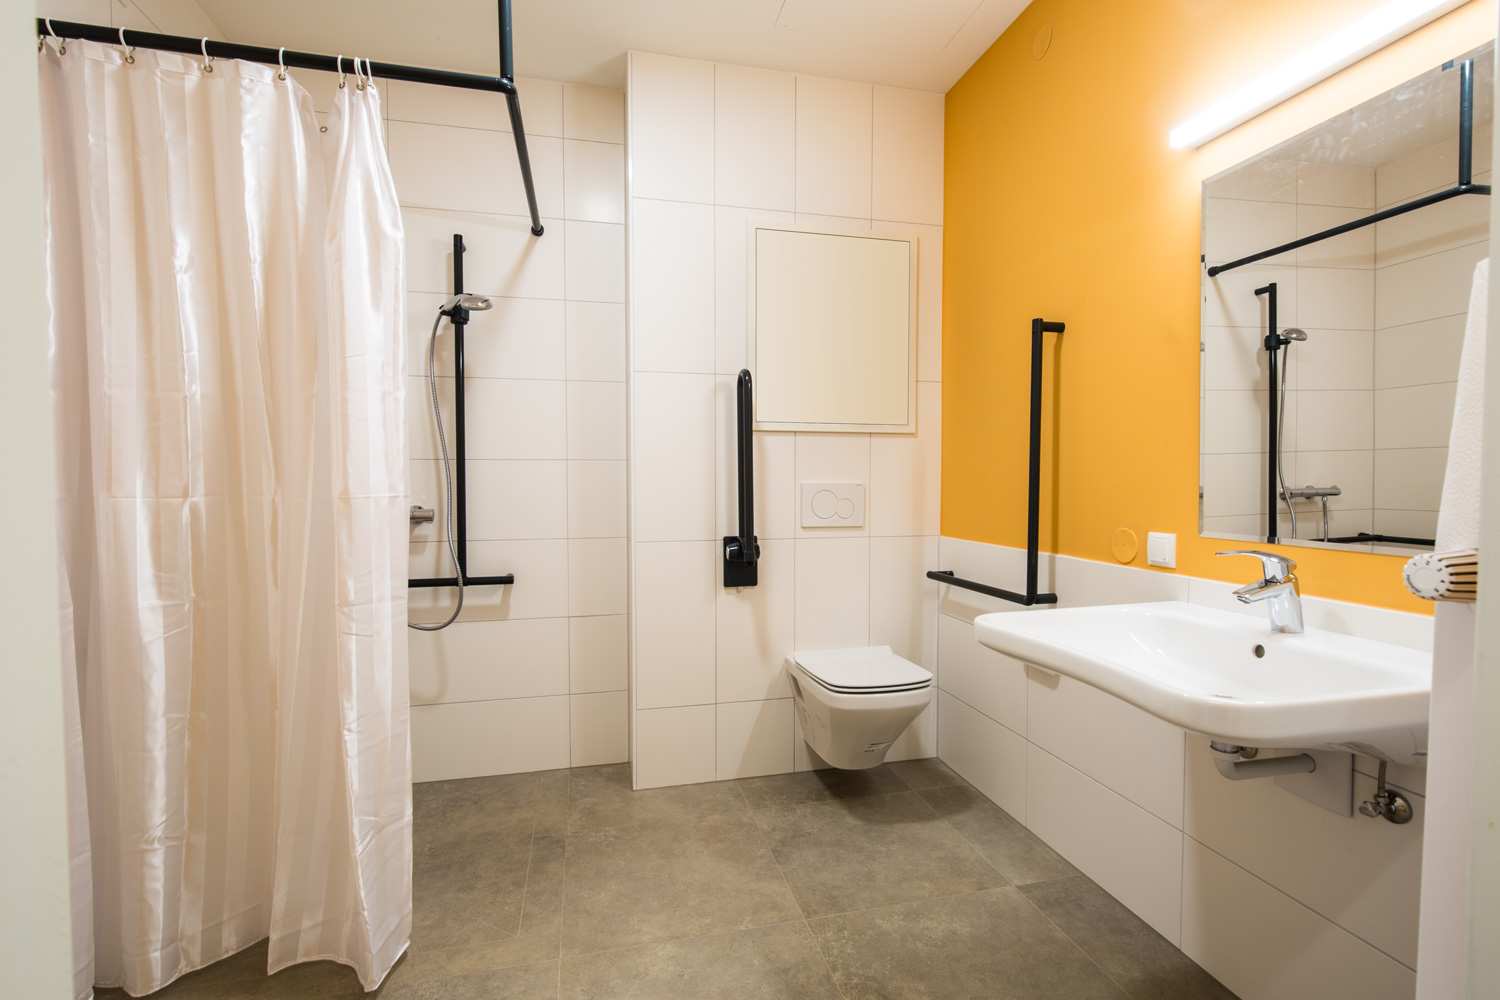 Ein großes Badezimmer mit einer Dusche mit Duschvorhand, einem Klo mit Stangen an der Wand und einem großen Wachbecken mit Spiegel darüber.